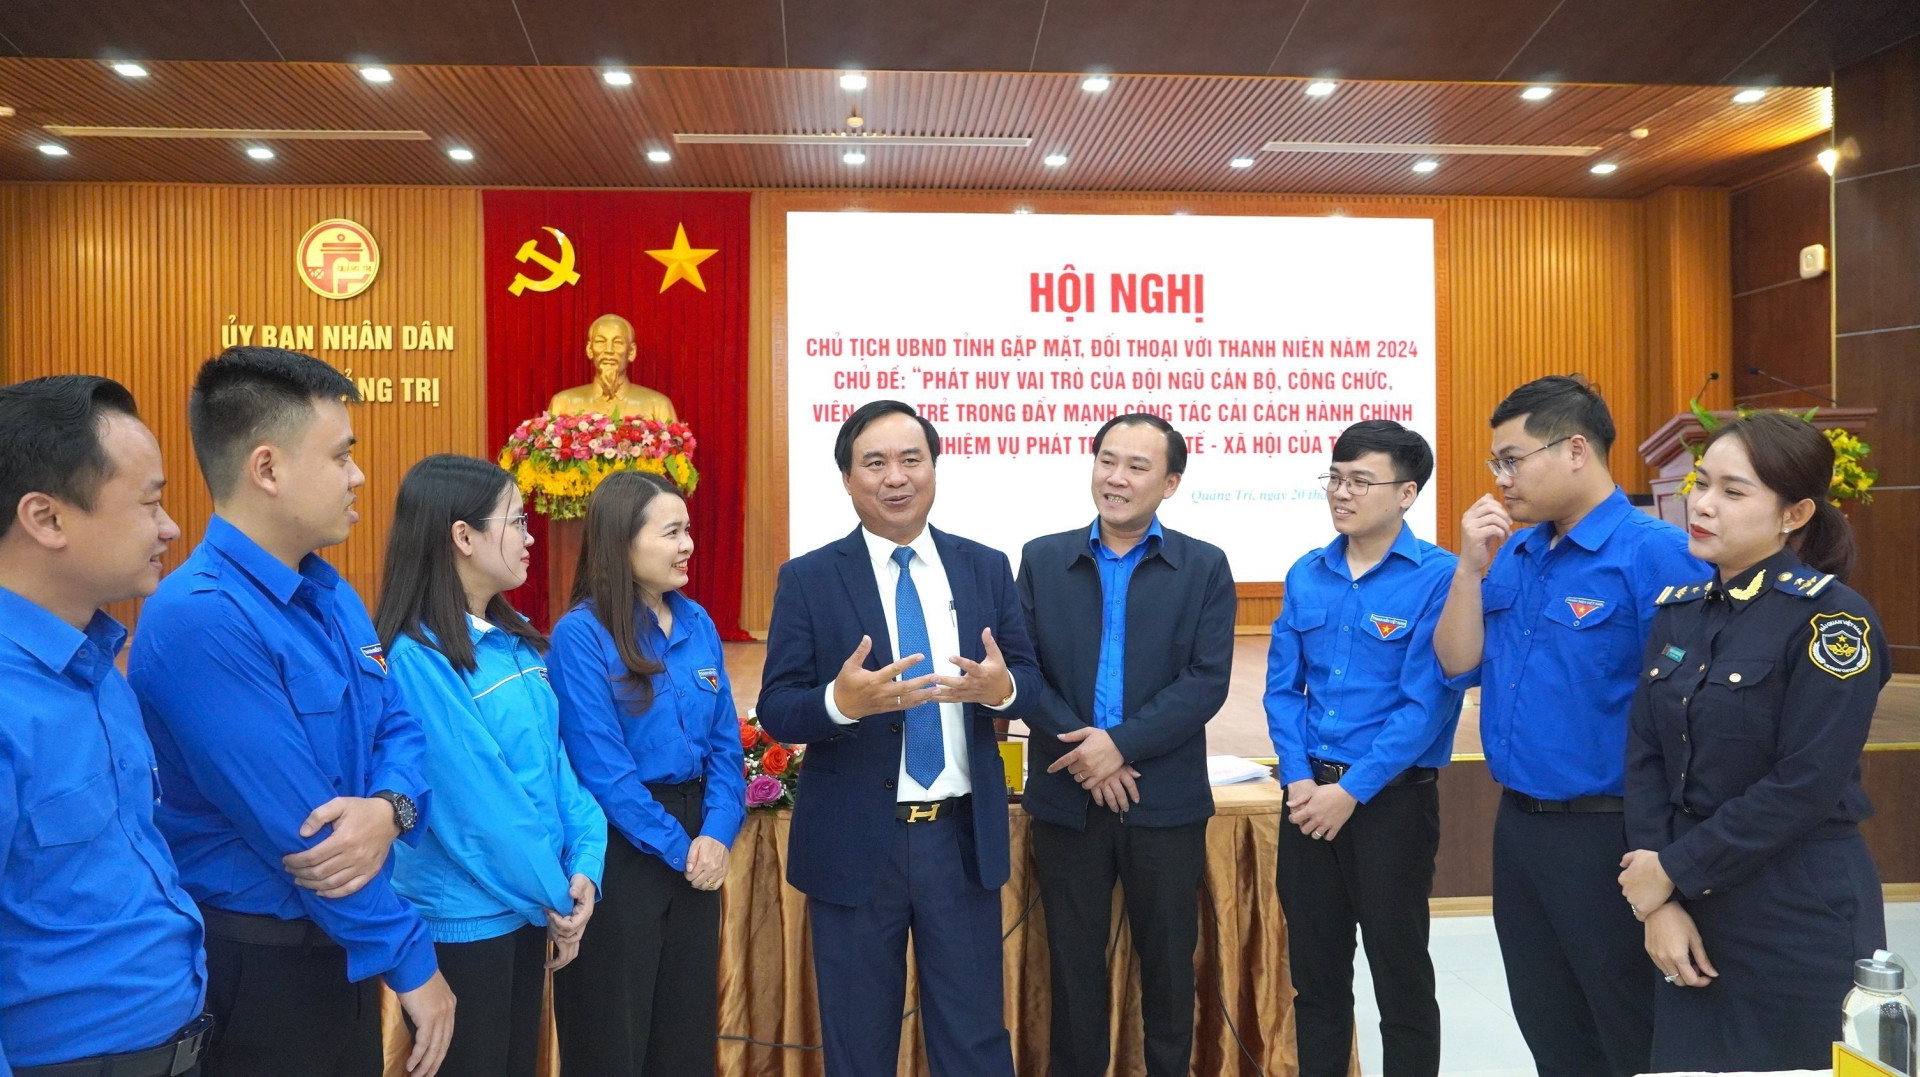 Đồng chí Chủ tịch Ủy ban nhân dân tỉnh Quảng Trị trao đổi với thanh niên tại Chương trình Chủ tịch Ủy ban nhân dân tỉnh gặp mặt, đối thoại với thanh niên năm 2024_Ảnh: TTXVN

